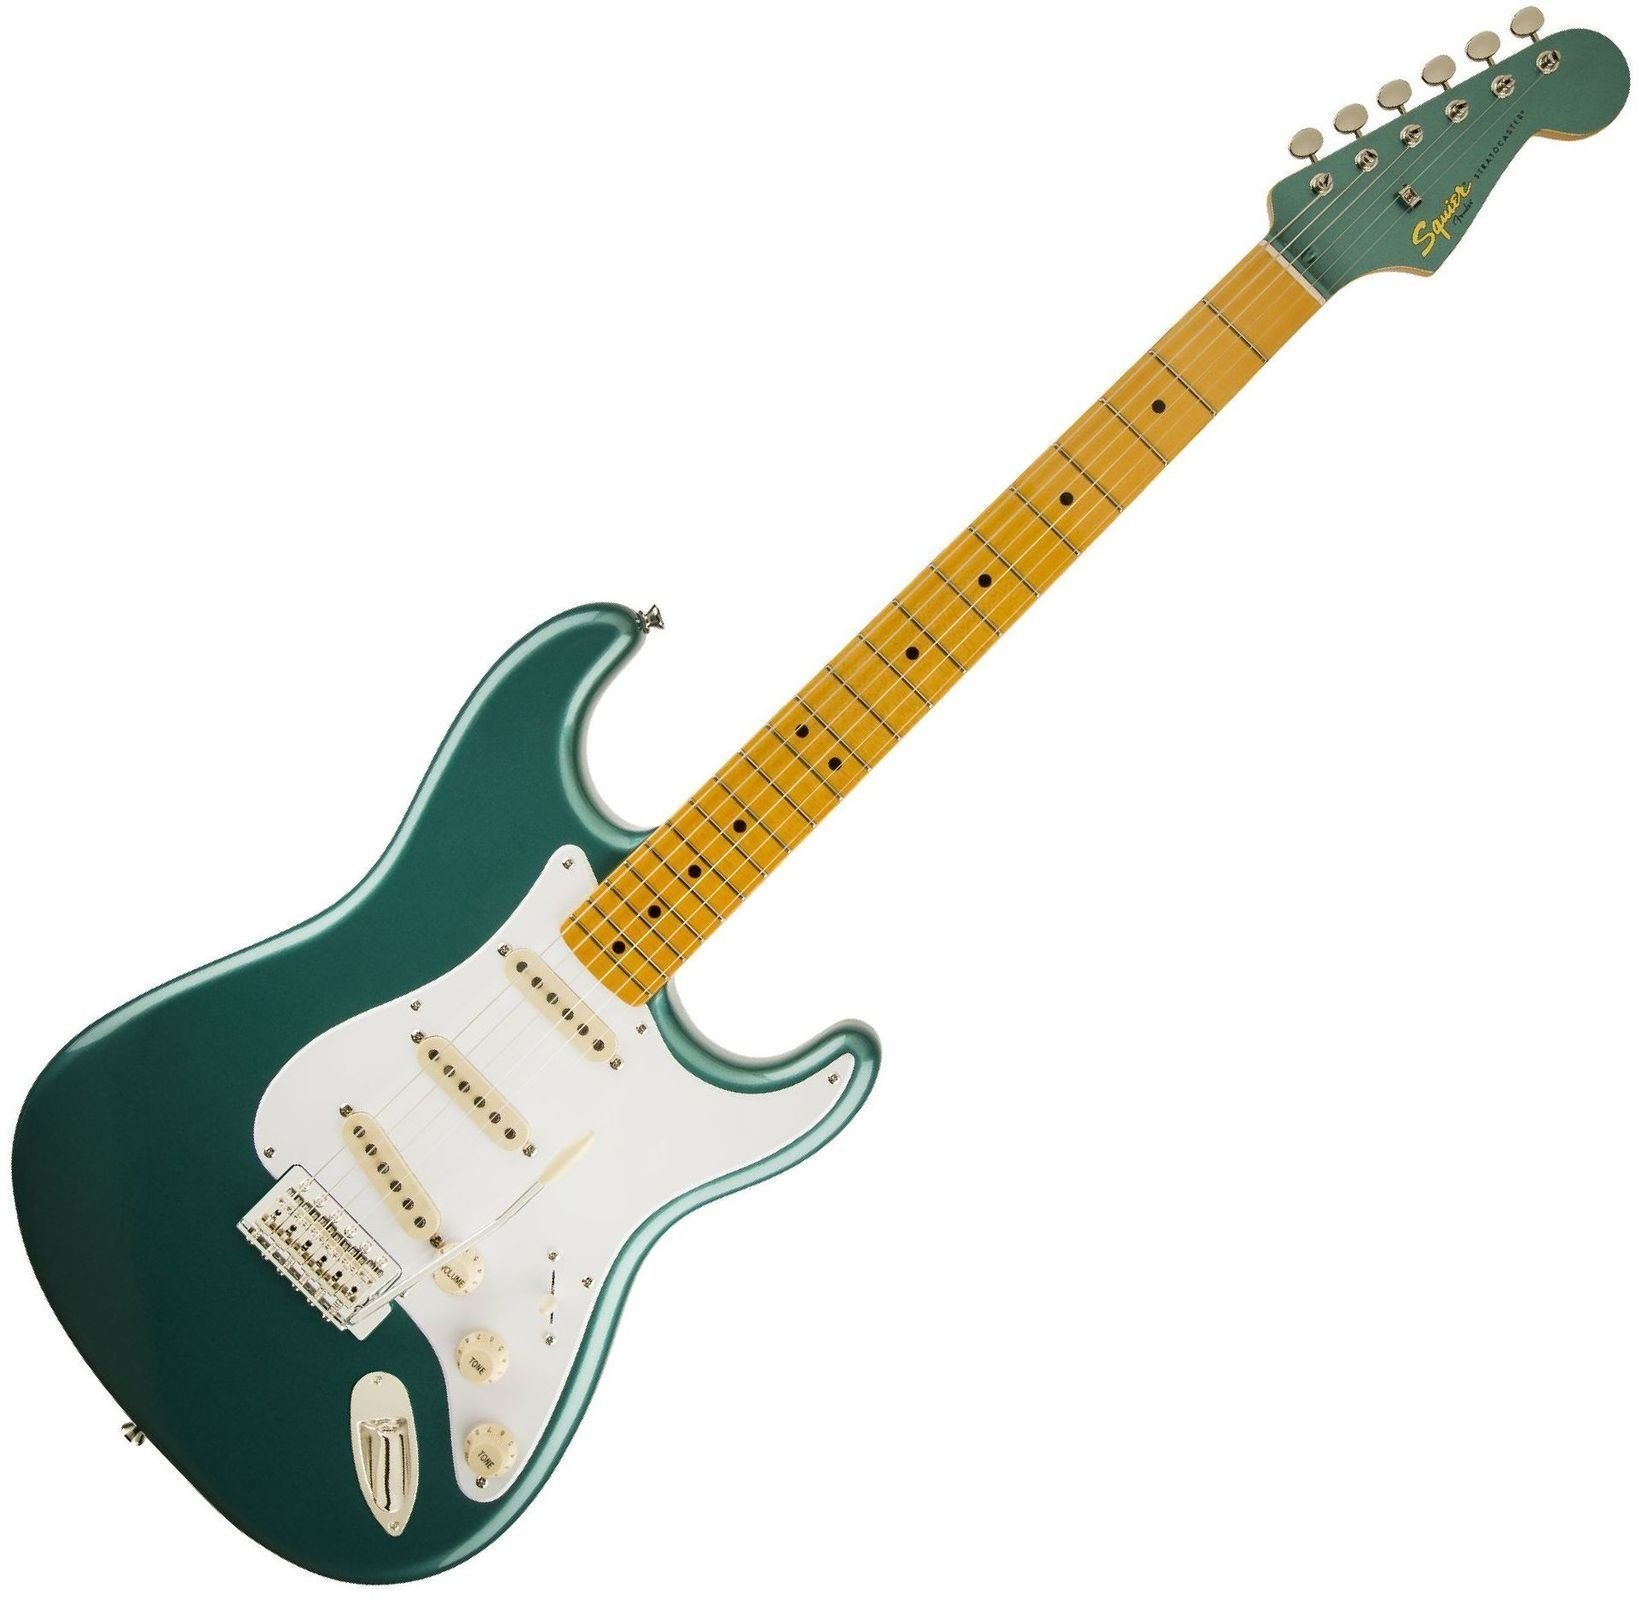 Ηλεκτρική Κιθάρα Fender Squier Classic Vibe Stratocaster 50s Sherwood Metallic Green